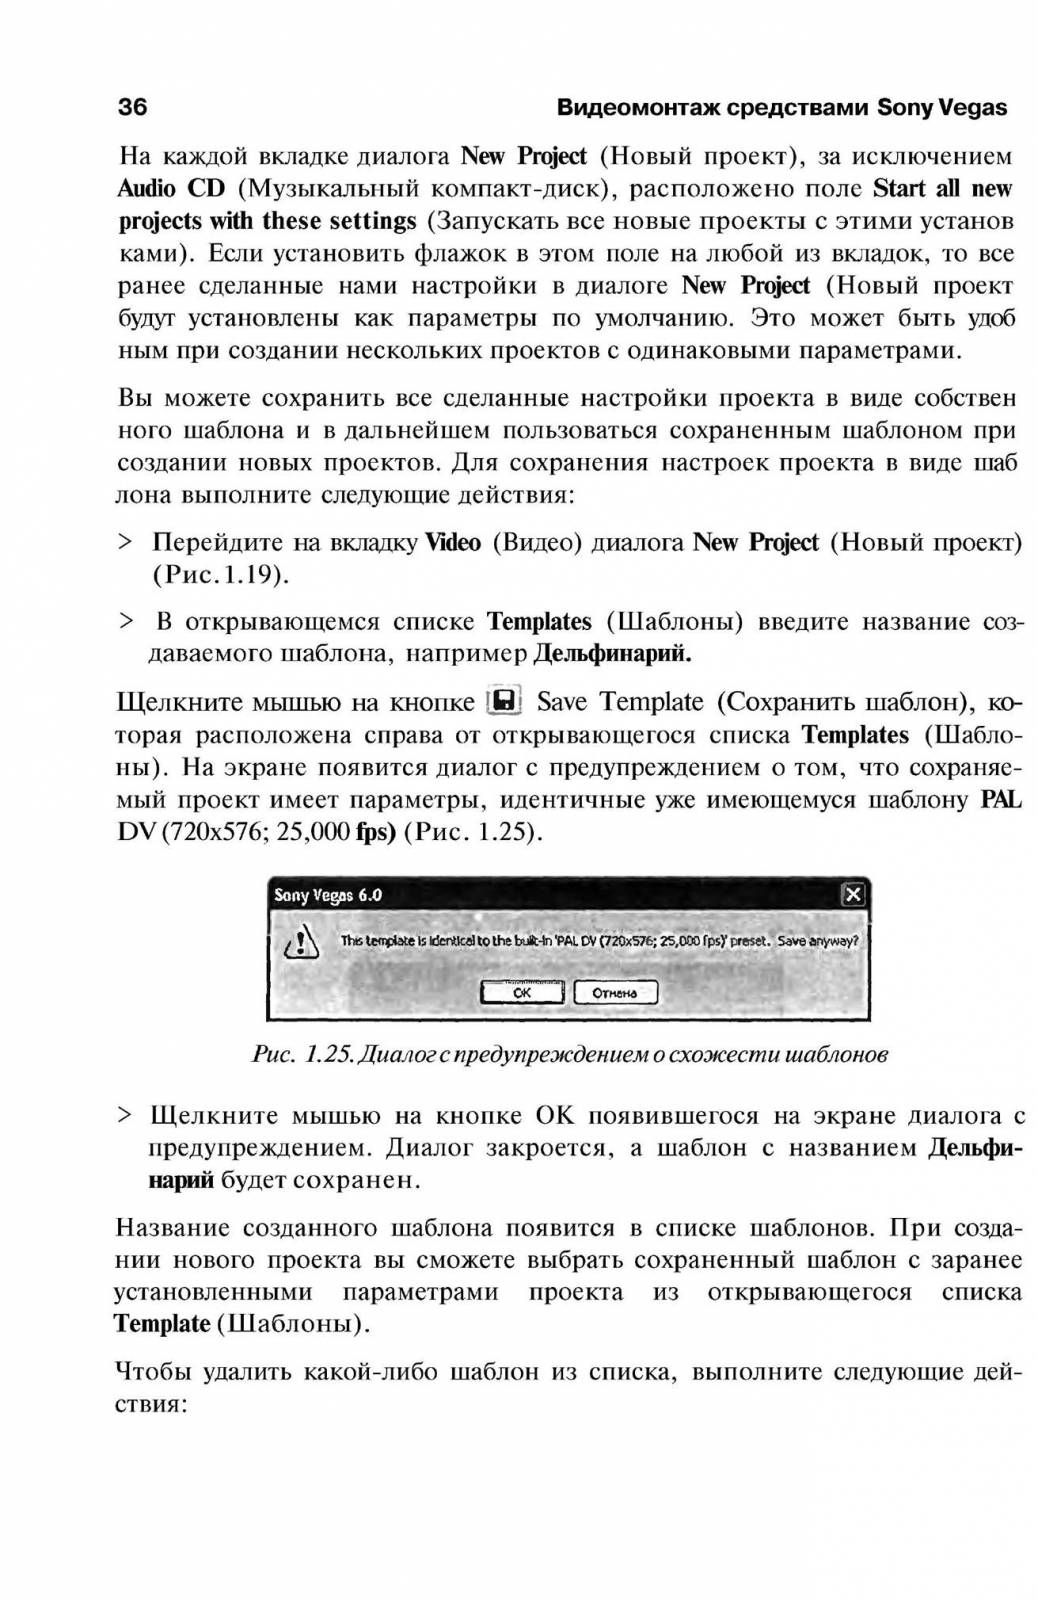 http://redaktori-uroki.3dn.ru/_ph/13/845942488.jpg